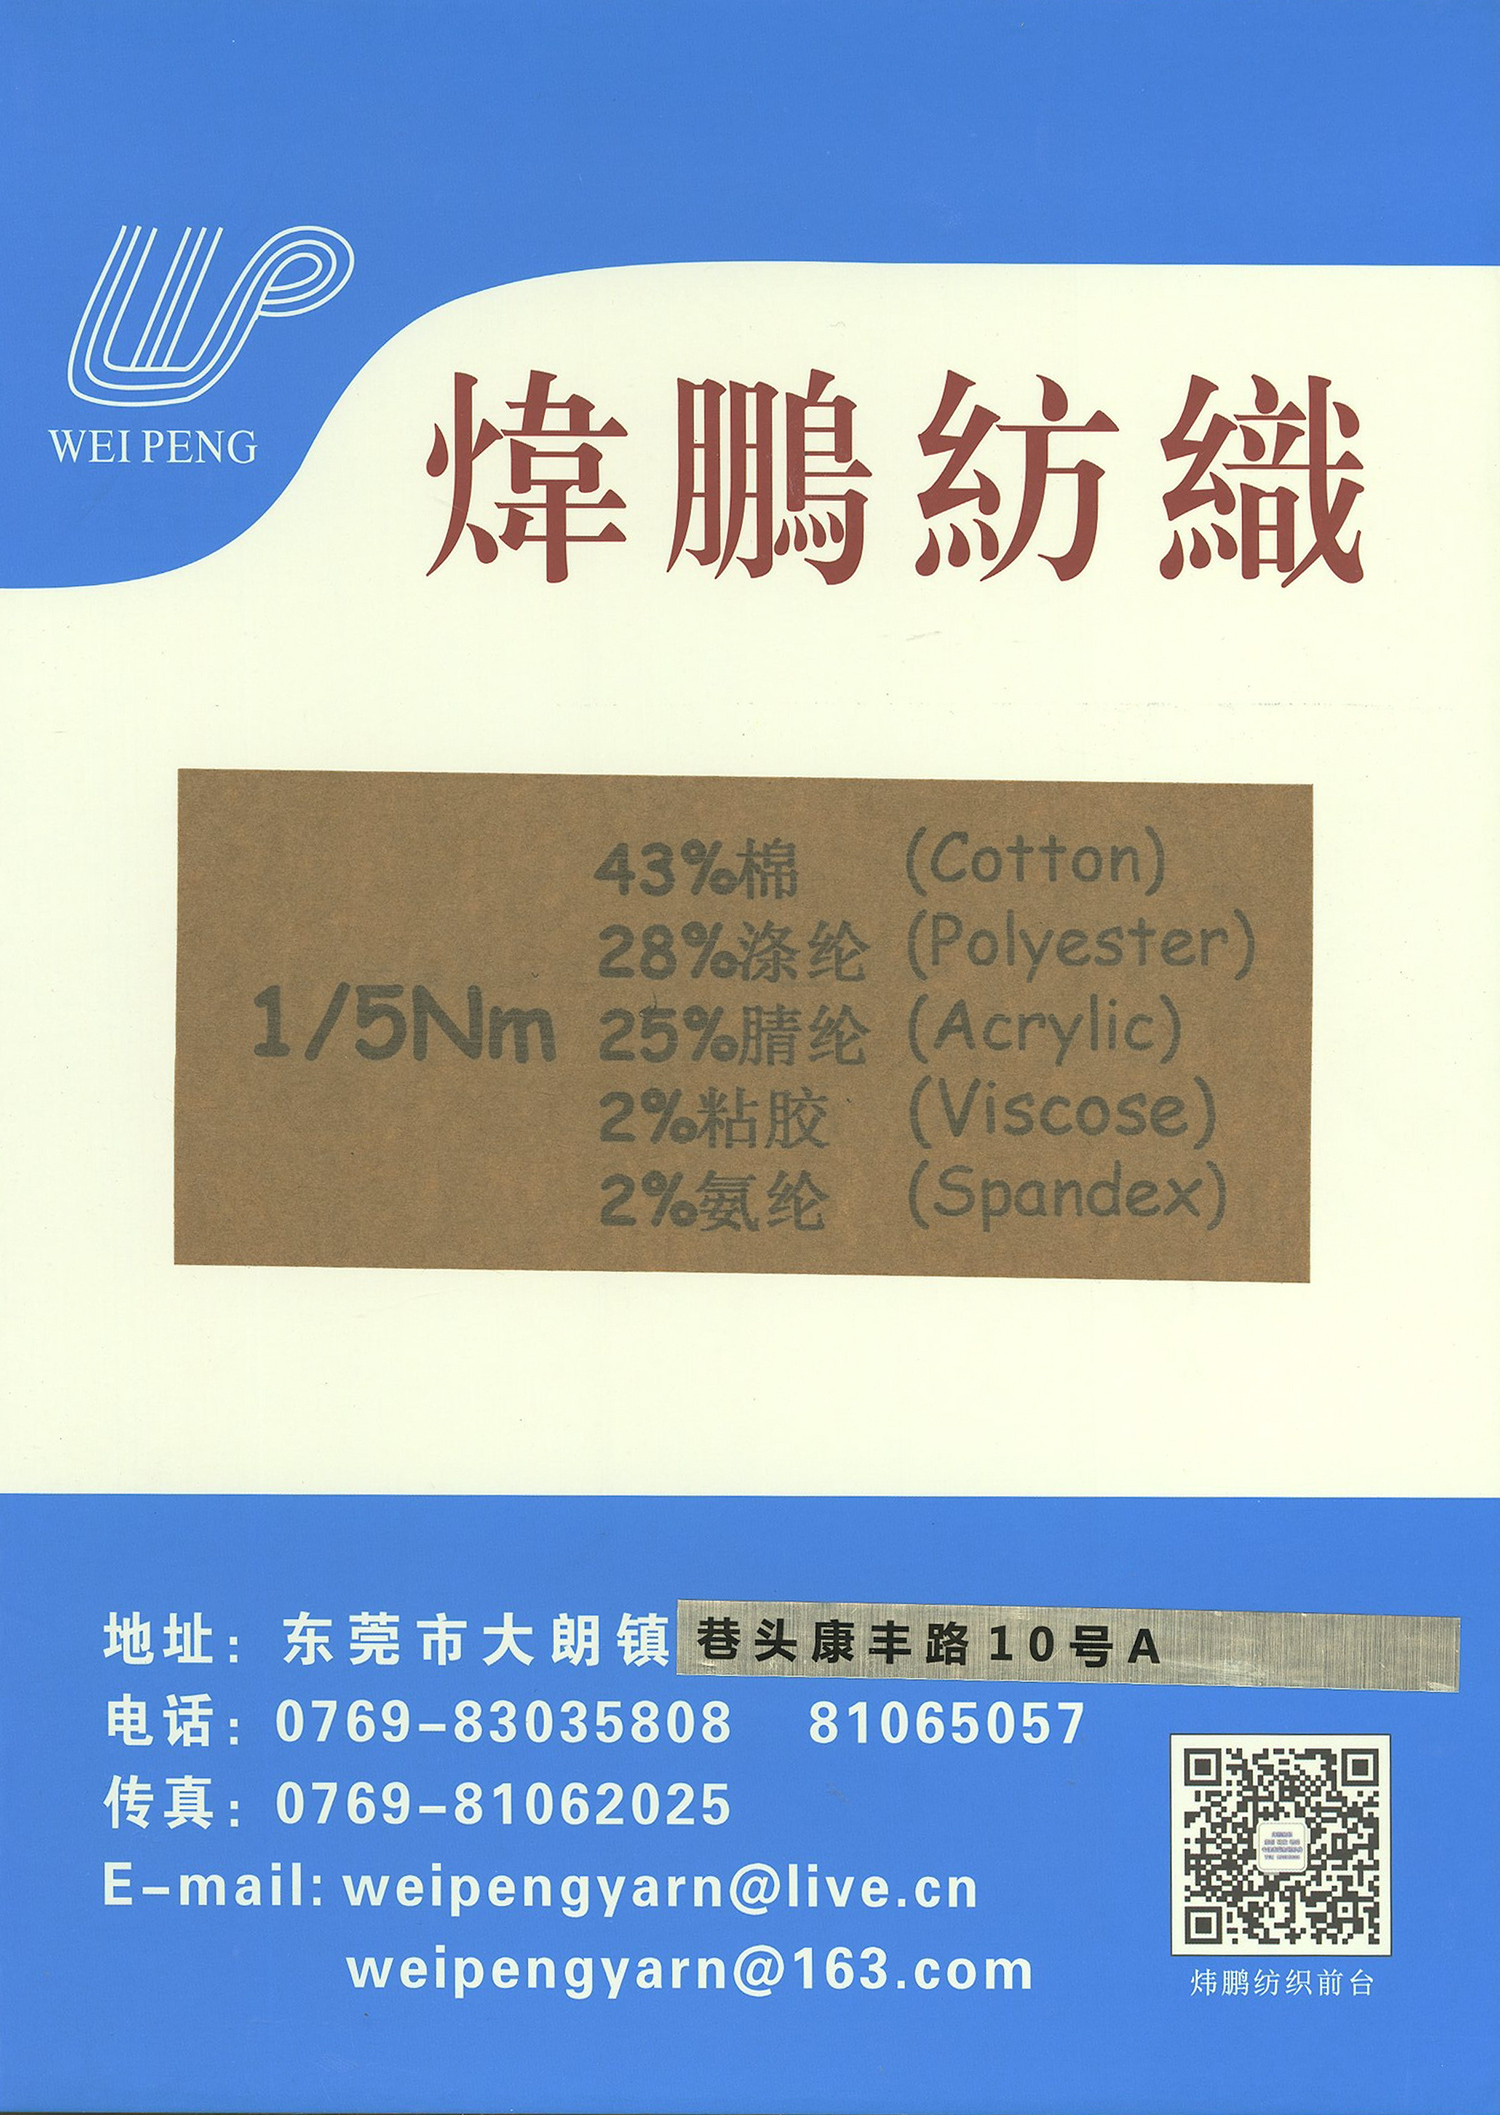 1/5Nm 43%棉 28%涤纶 2%粘胶 2%氨纶 25%腈纶